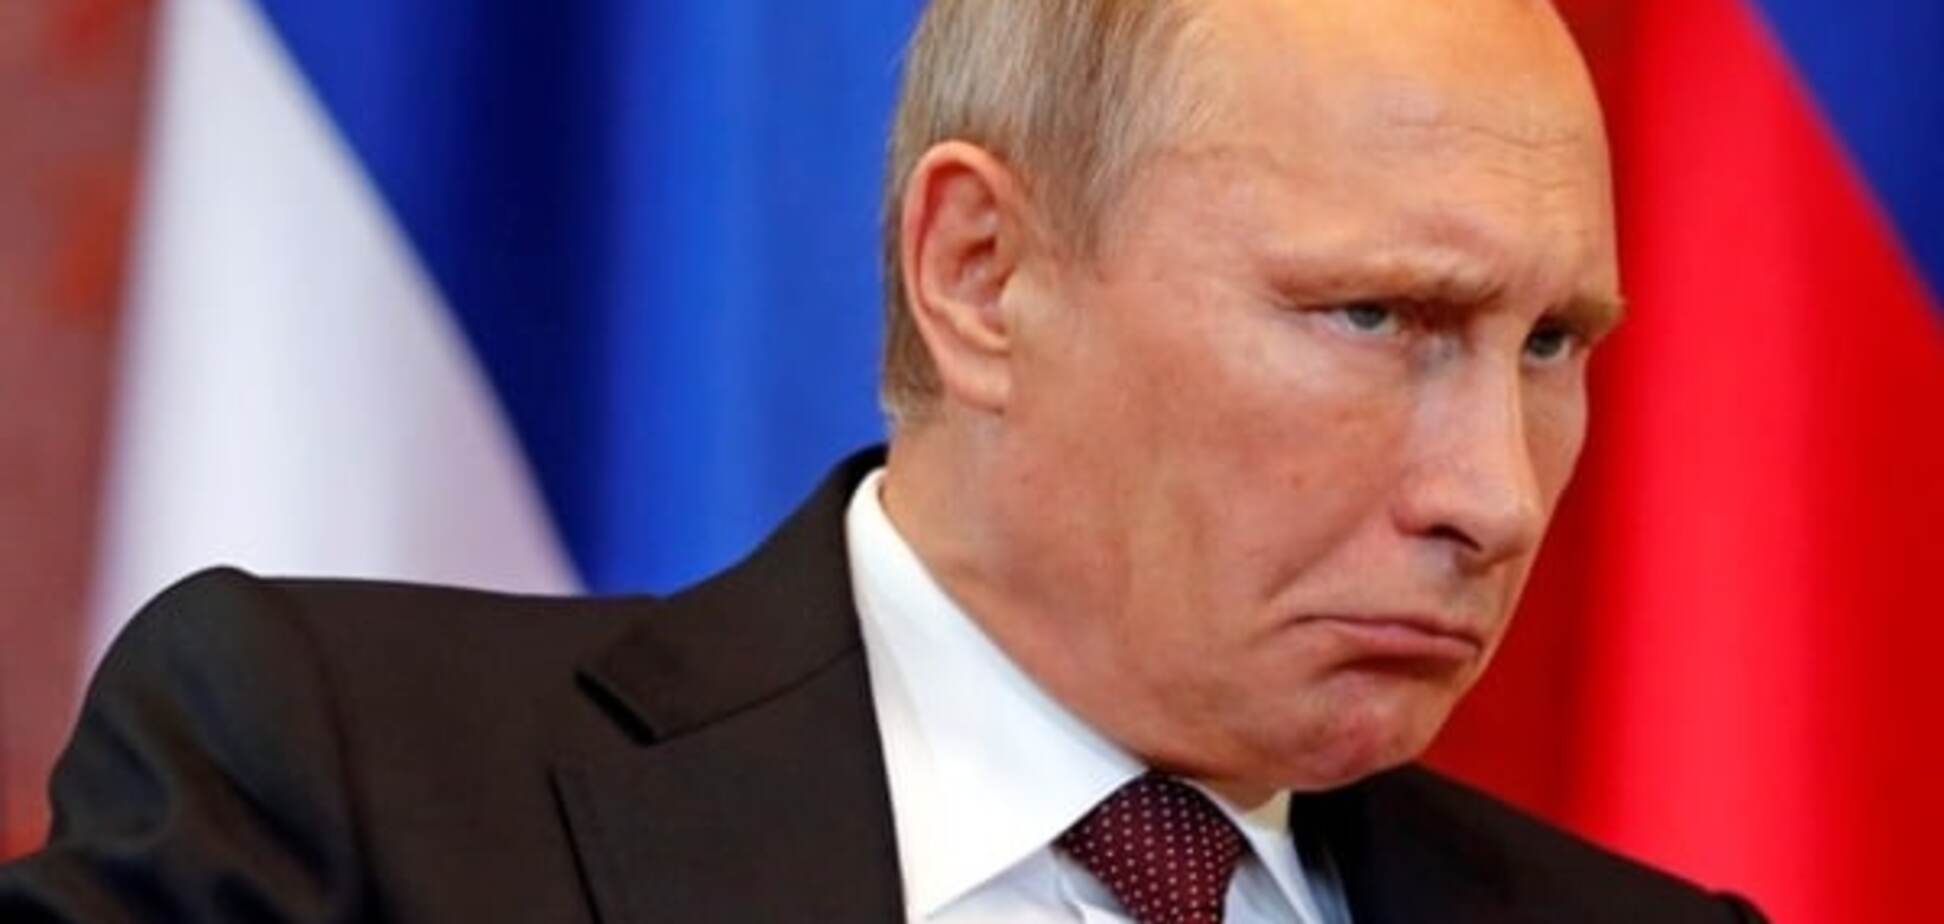 Вот так подарок: россиянам предложили 'повесить Путина'. Фотофакт